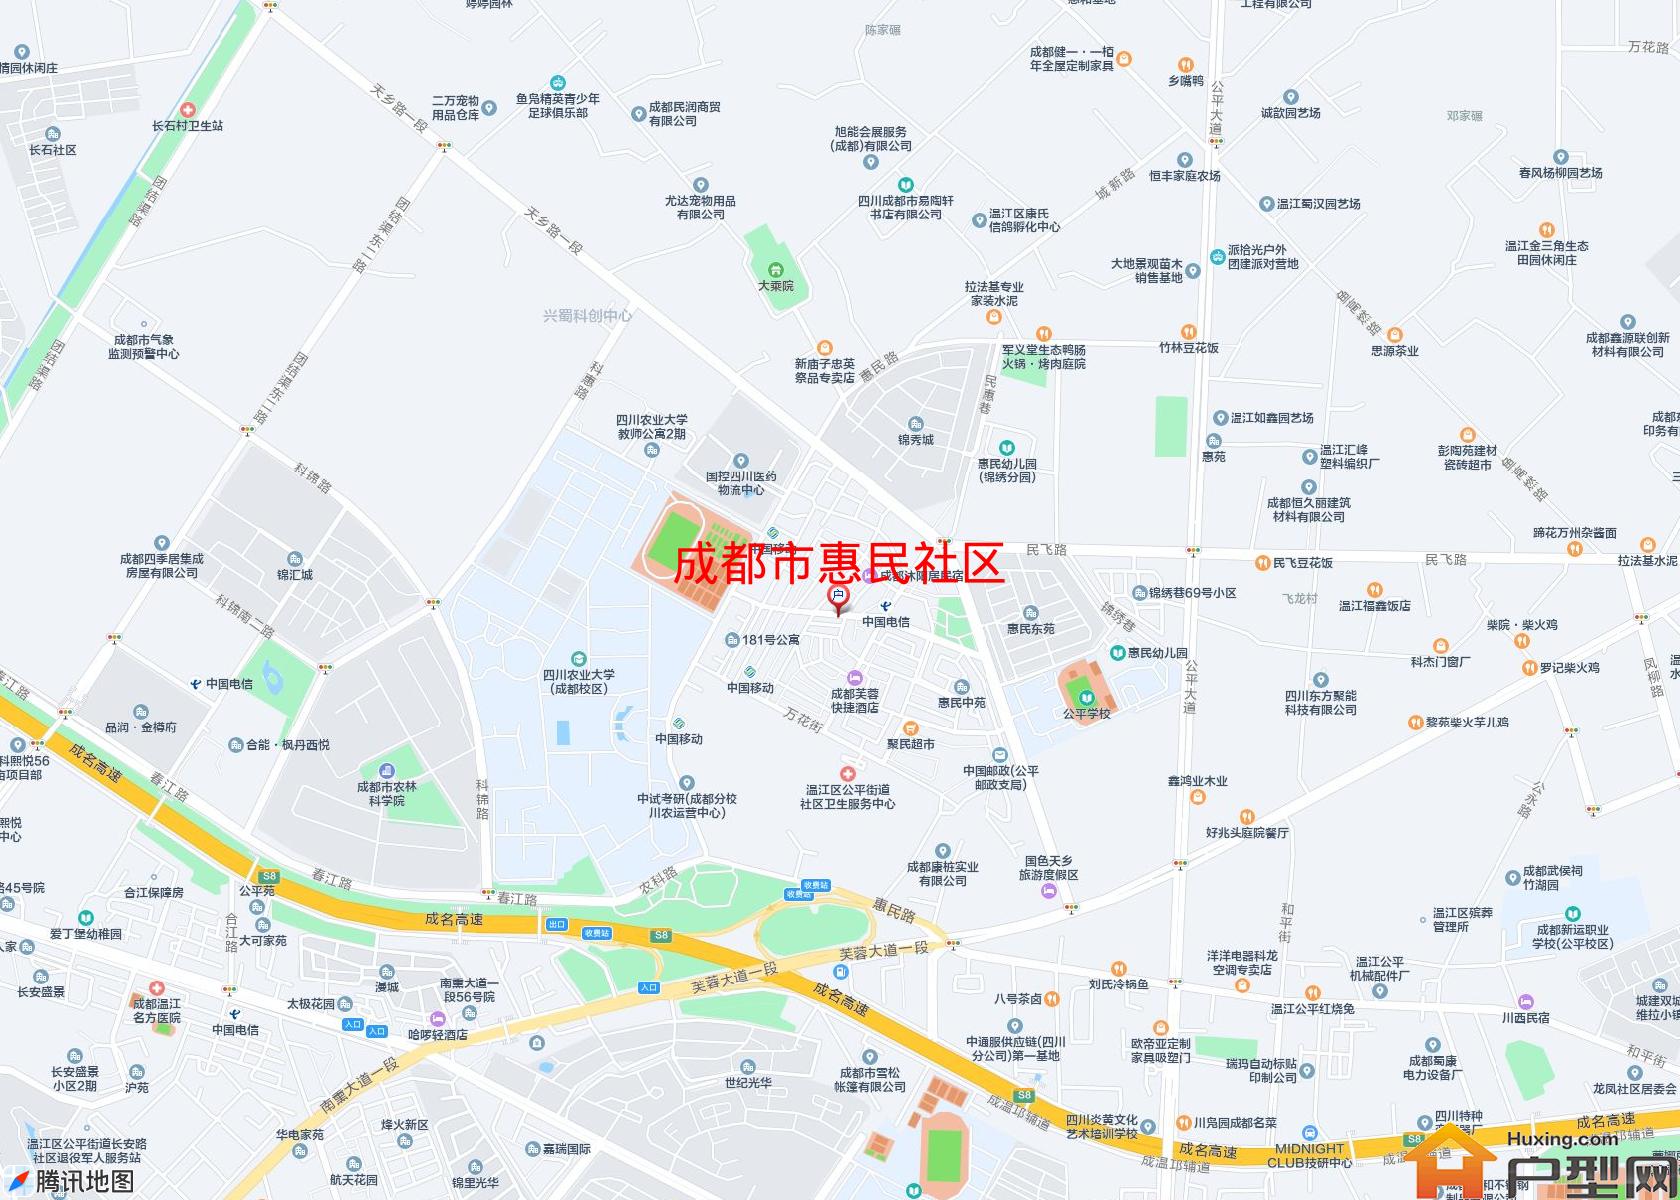 惠民社区小区 - 户型网